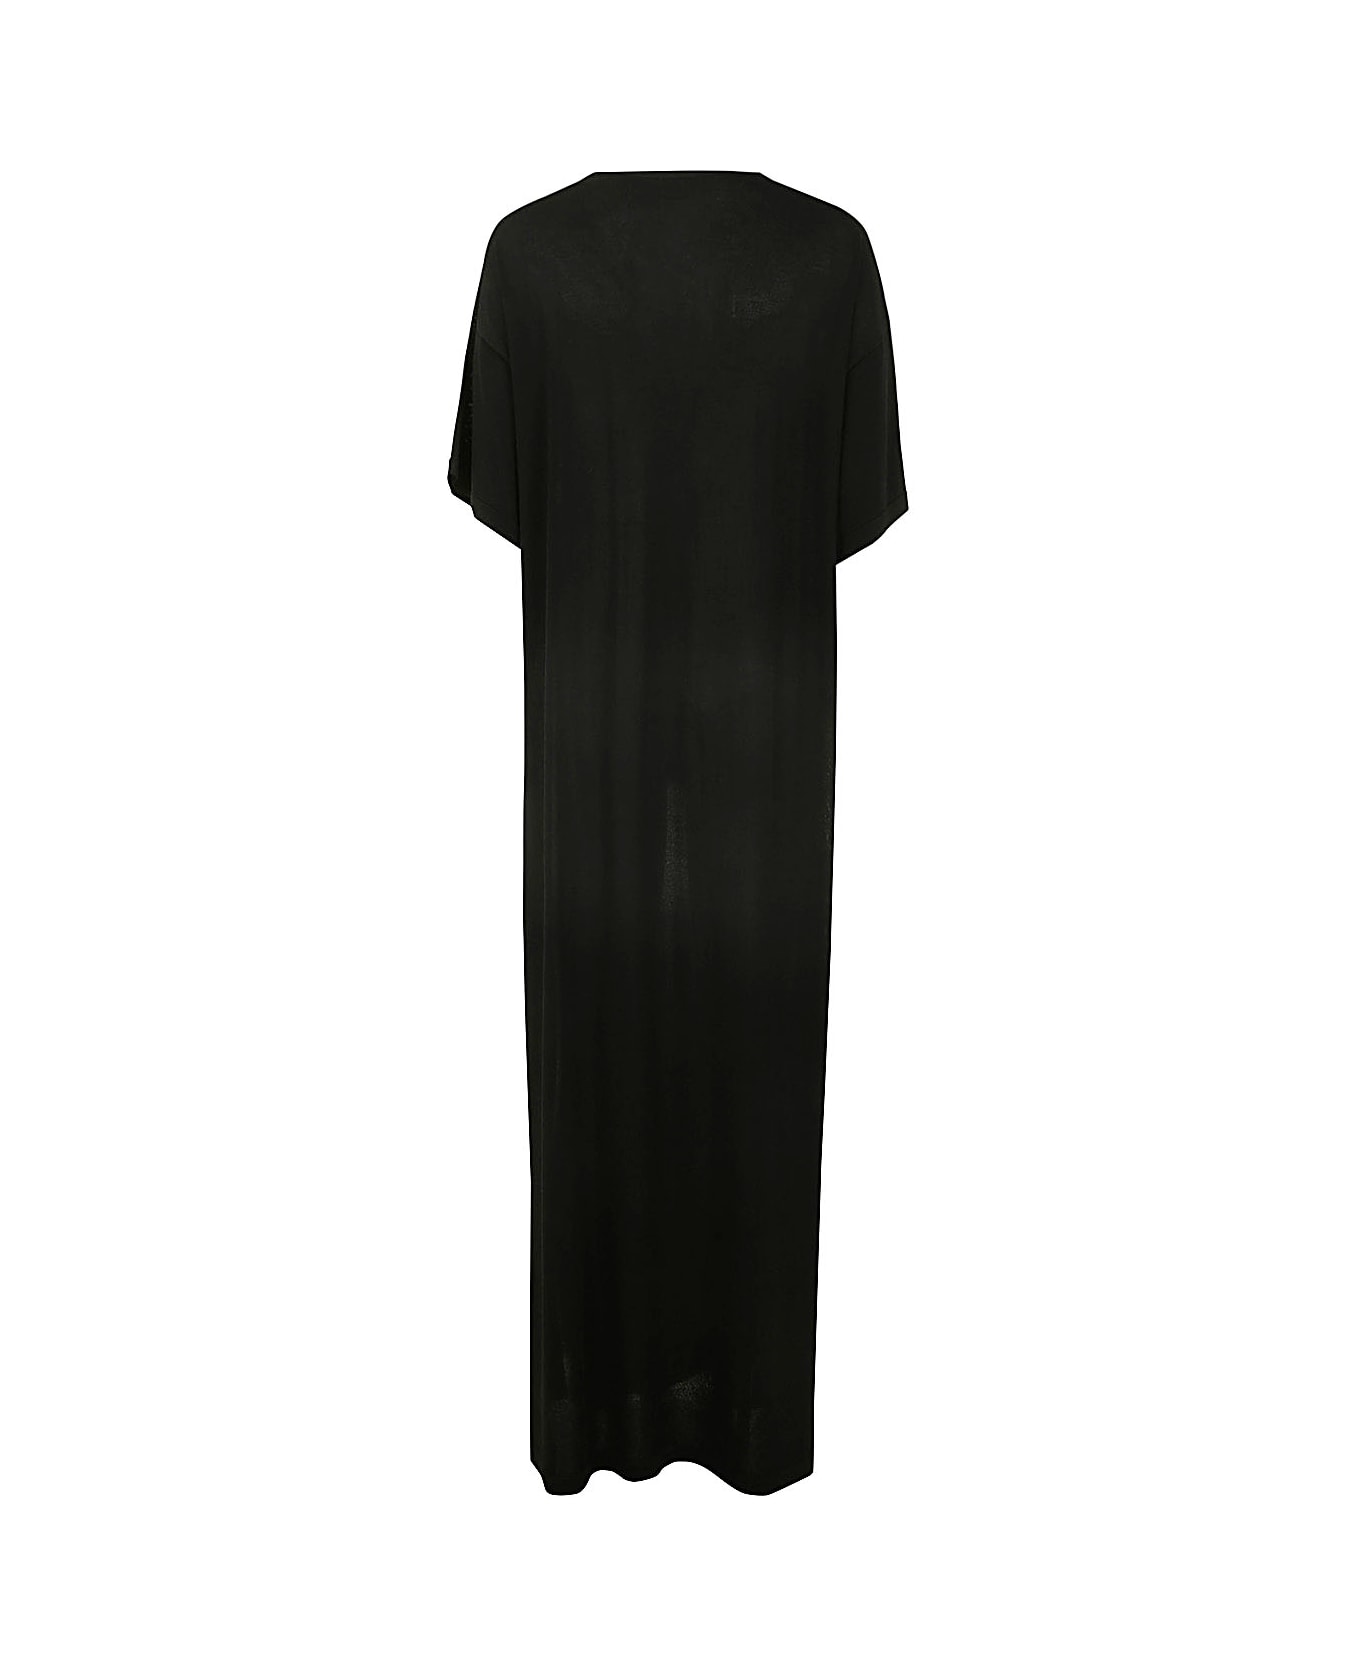 Parosh Short Sleeve Dress - Black